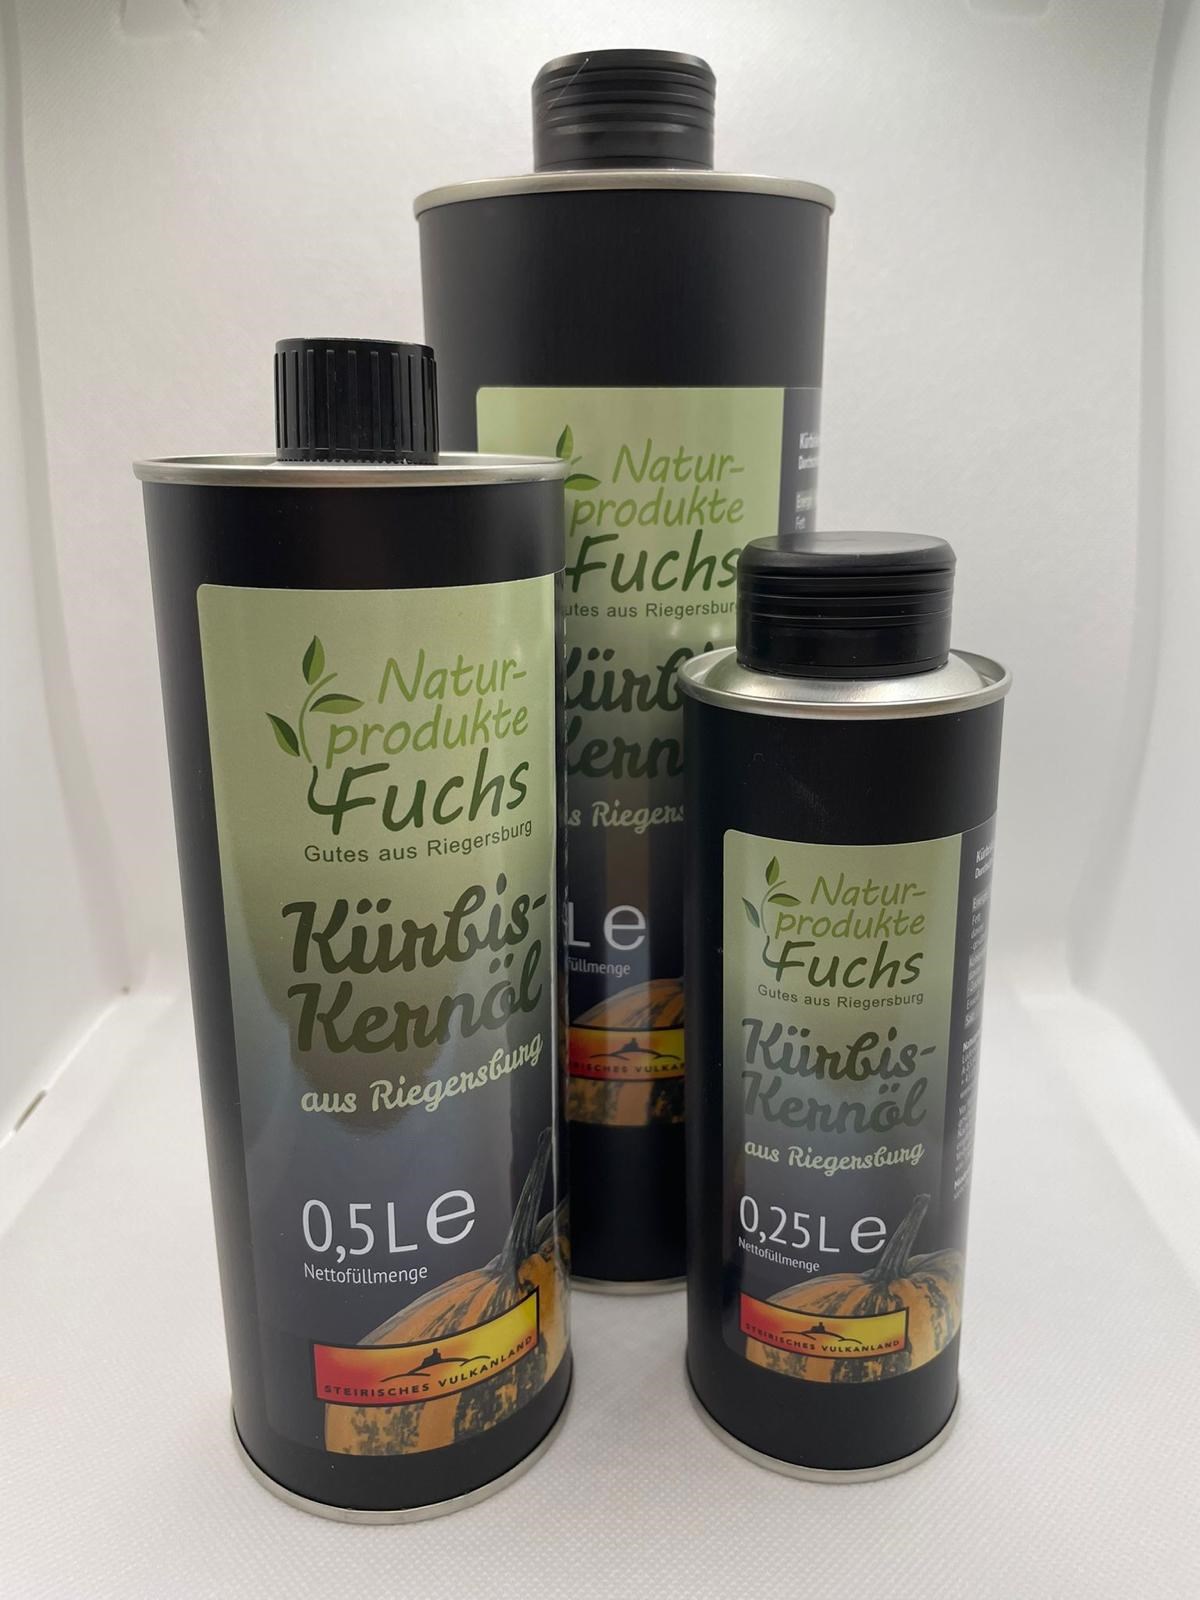 Naturprodukte Fuchs Produkt-Beispiele Kürbiskernöl